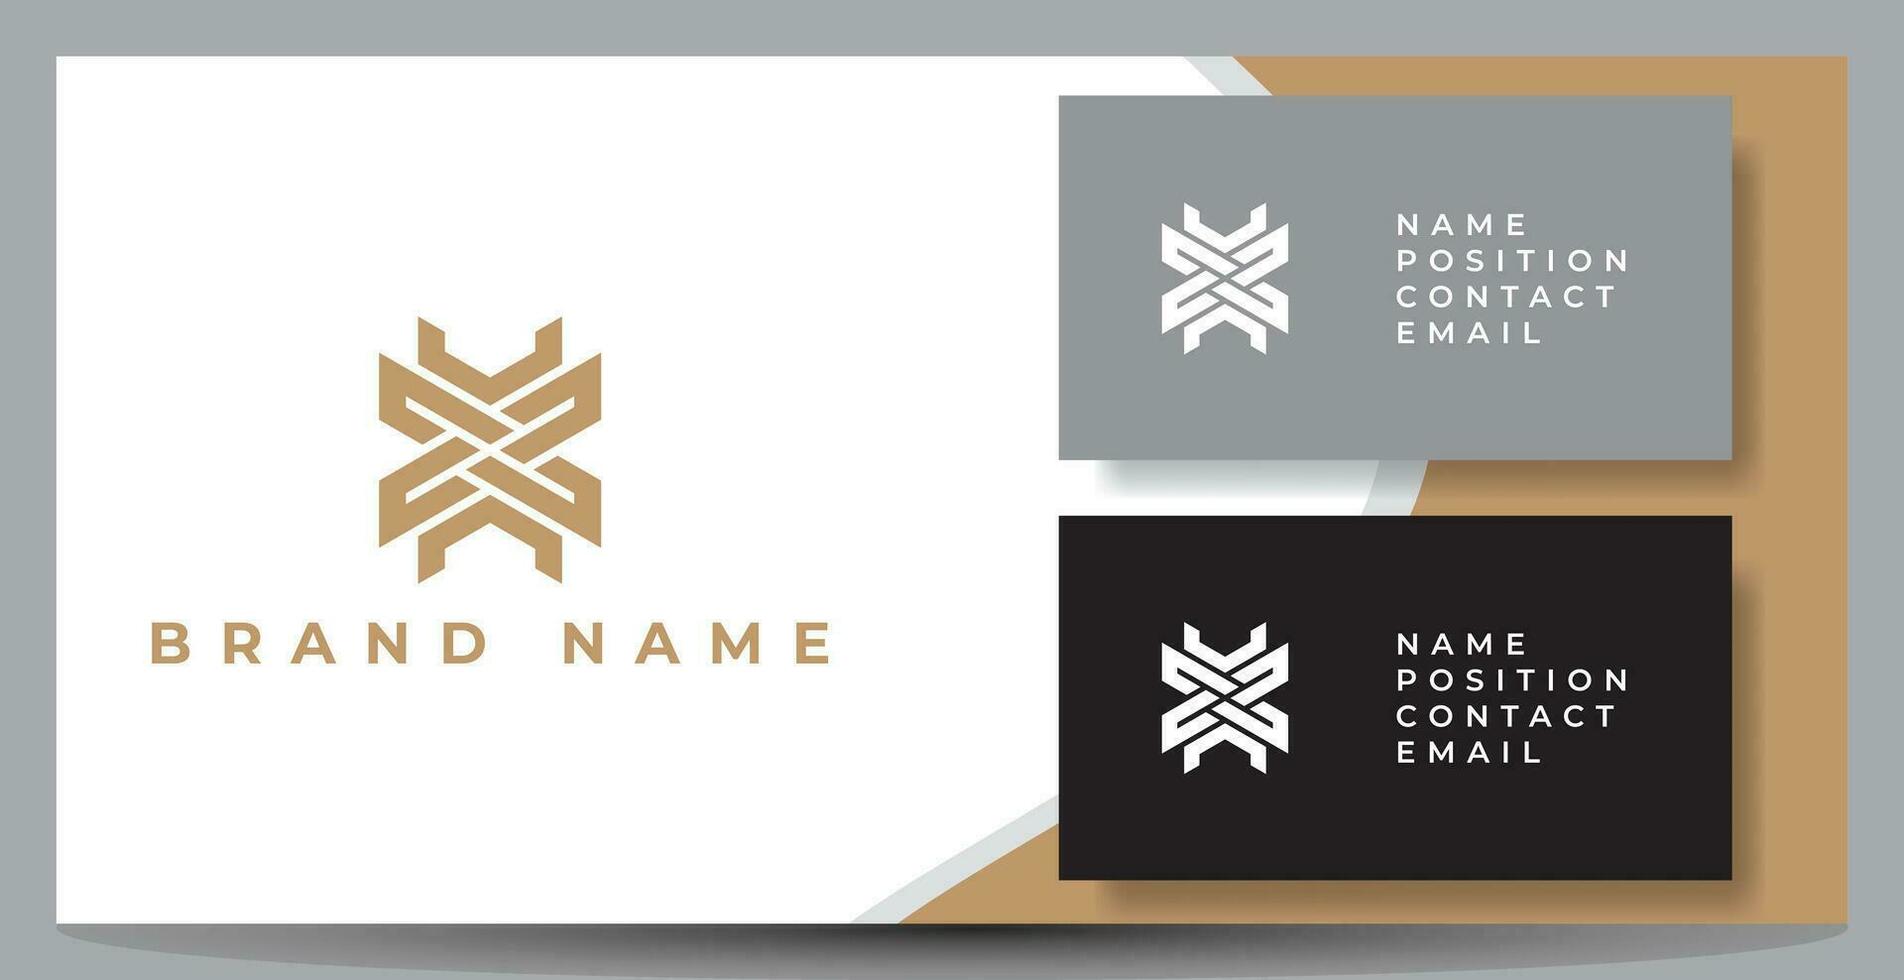 resumen creativo y minimalista letra mx logo diseño icono con social sencillo negocio tarjeta diseño modelo presentación vector